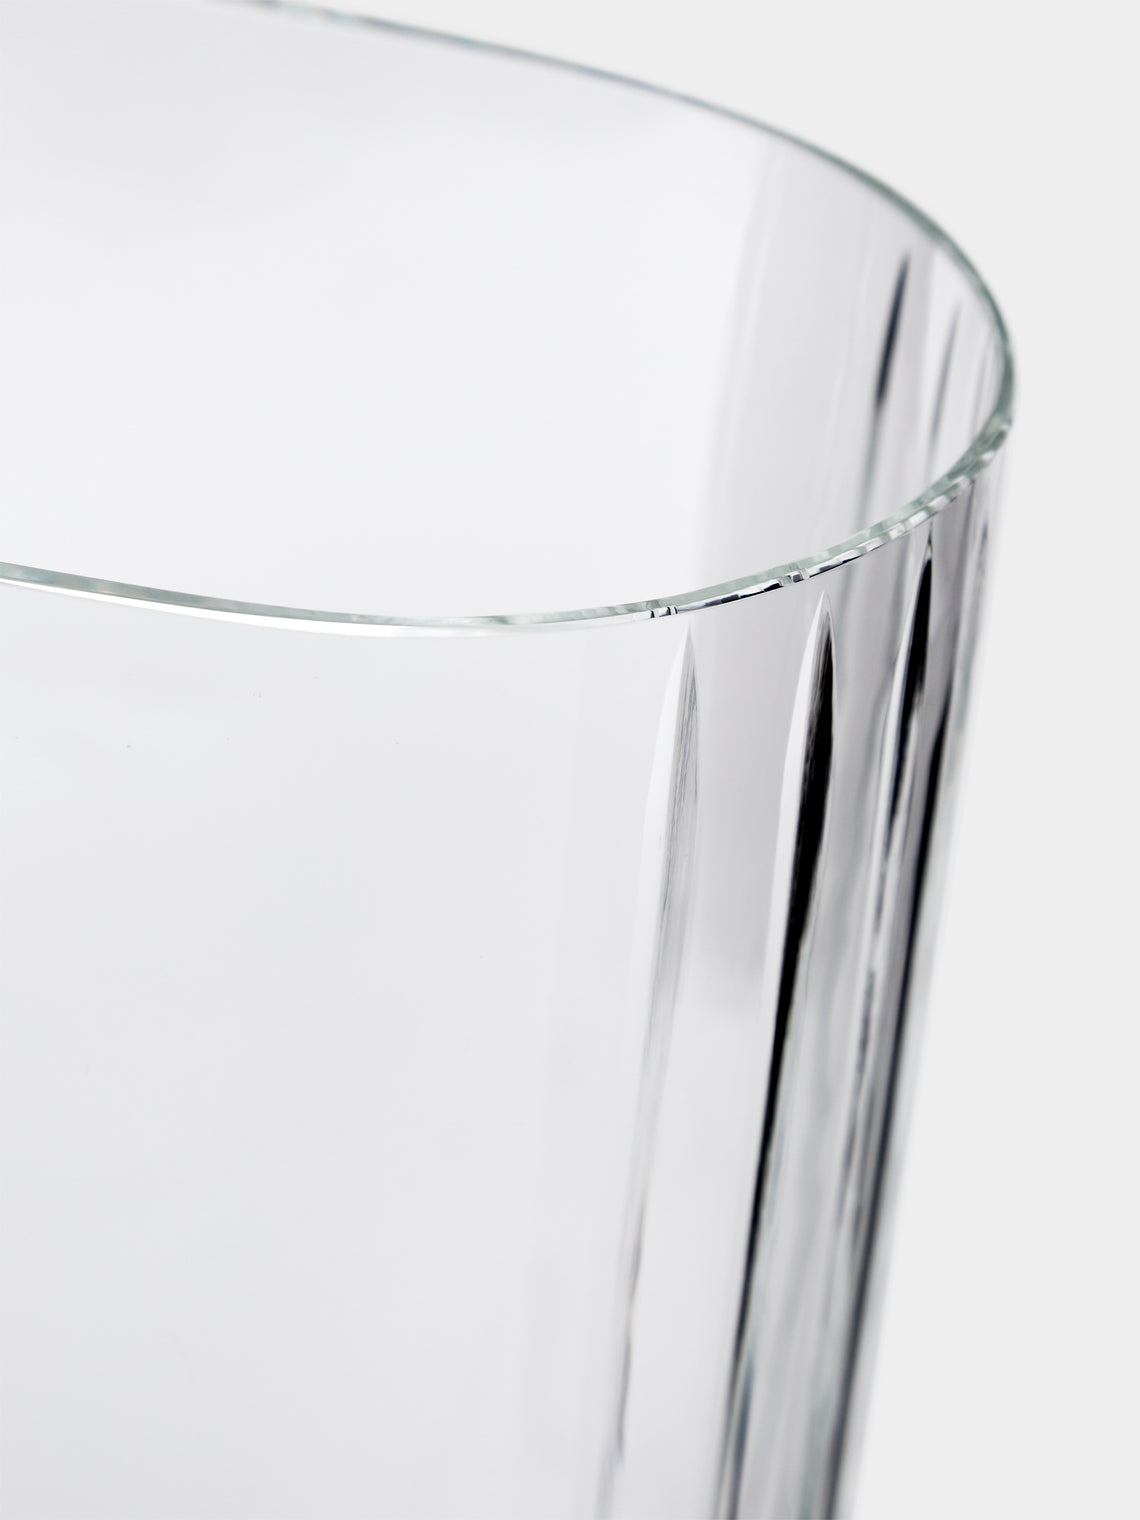 Carlo Moretti - Ovale Tagli Hand-Blown Murano Glass Vase - Clear - ABASK